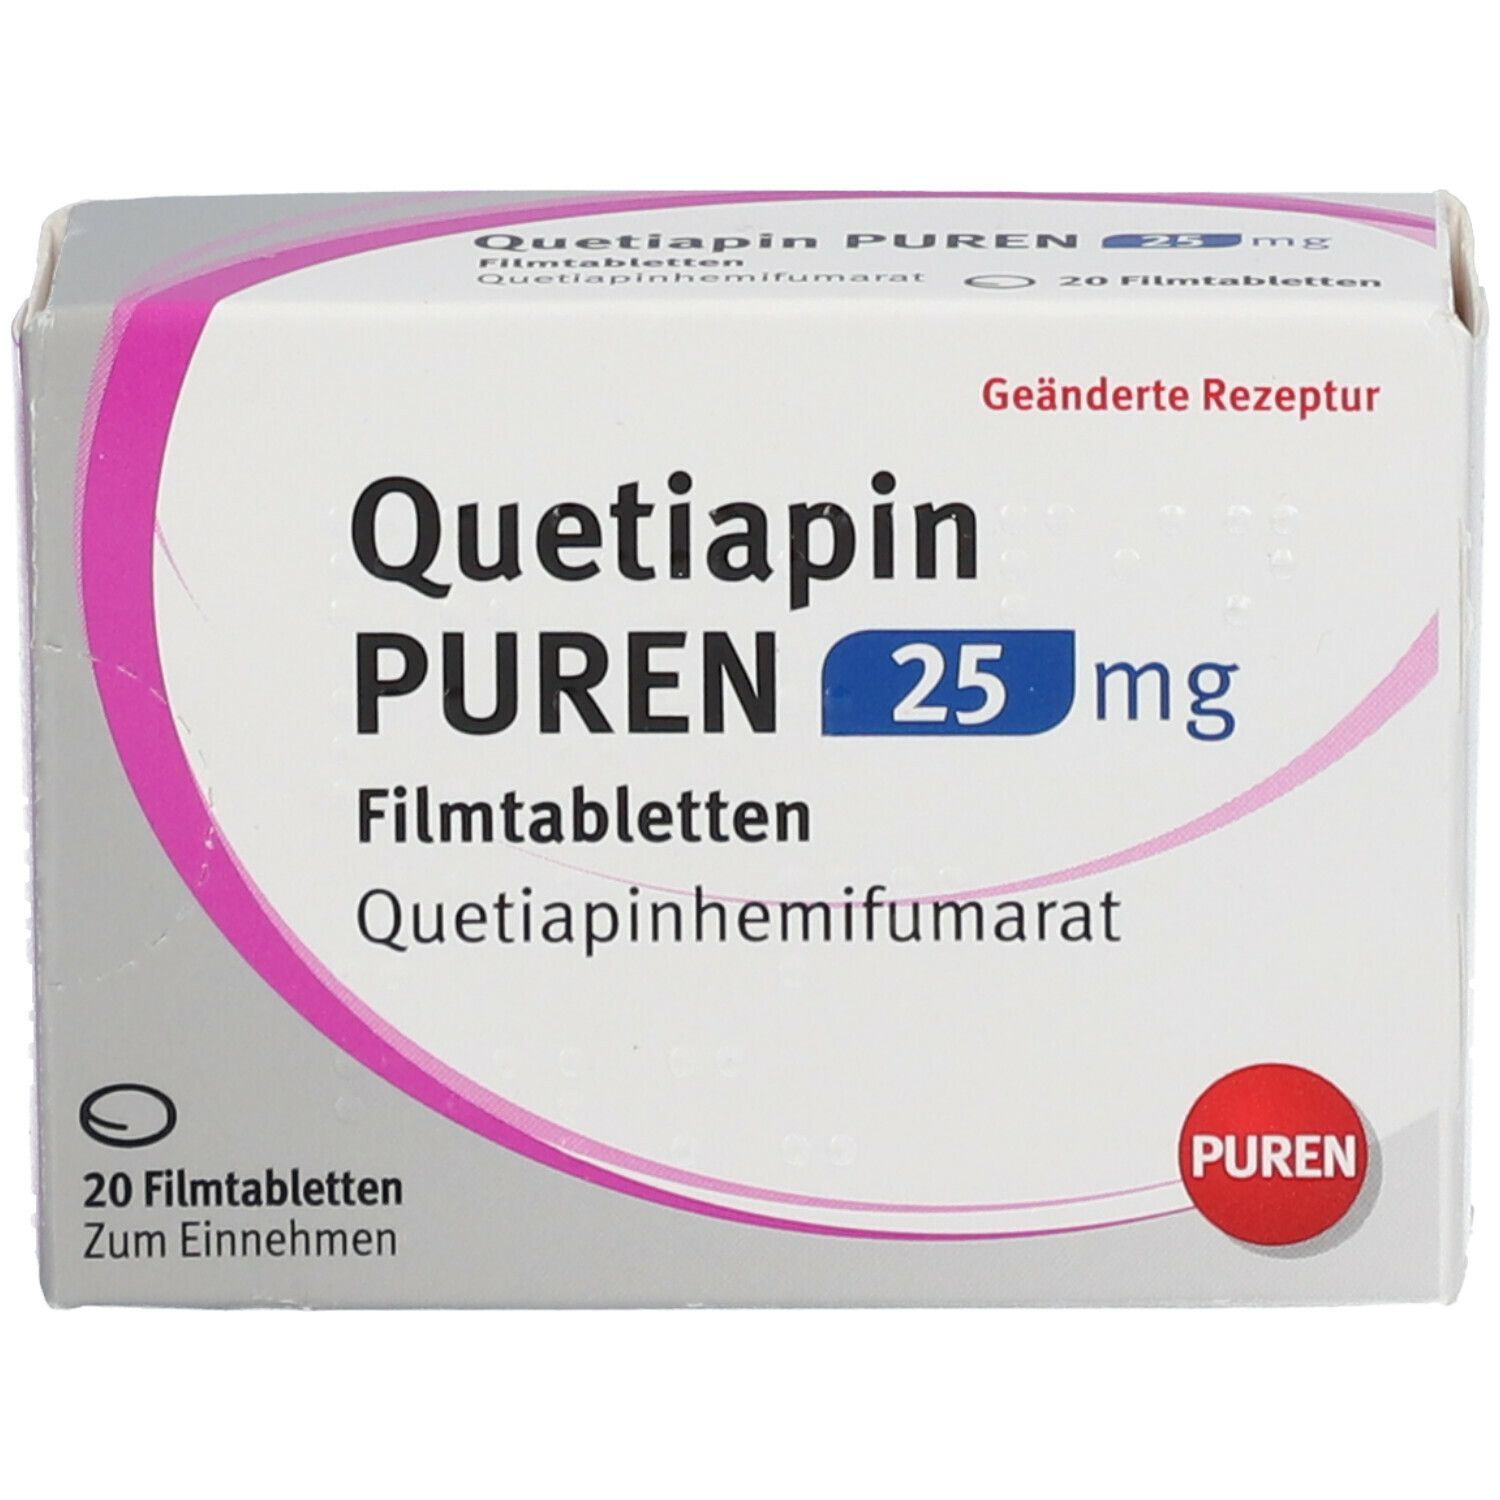 Quetiapin PUREN 25 mg